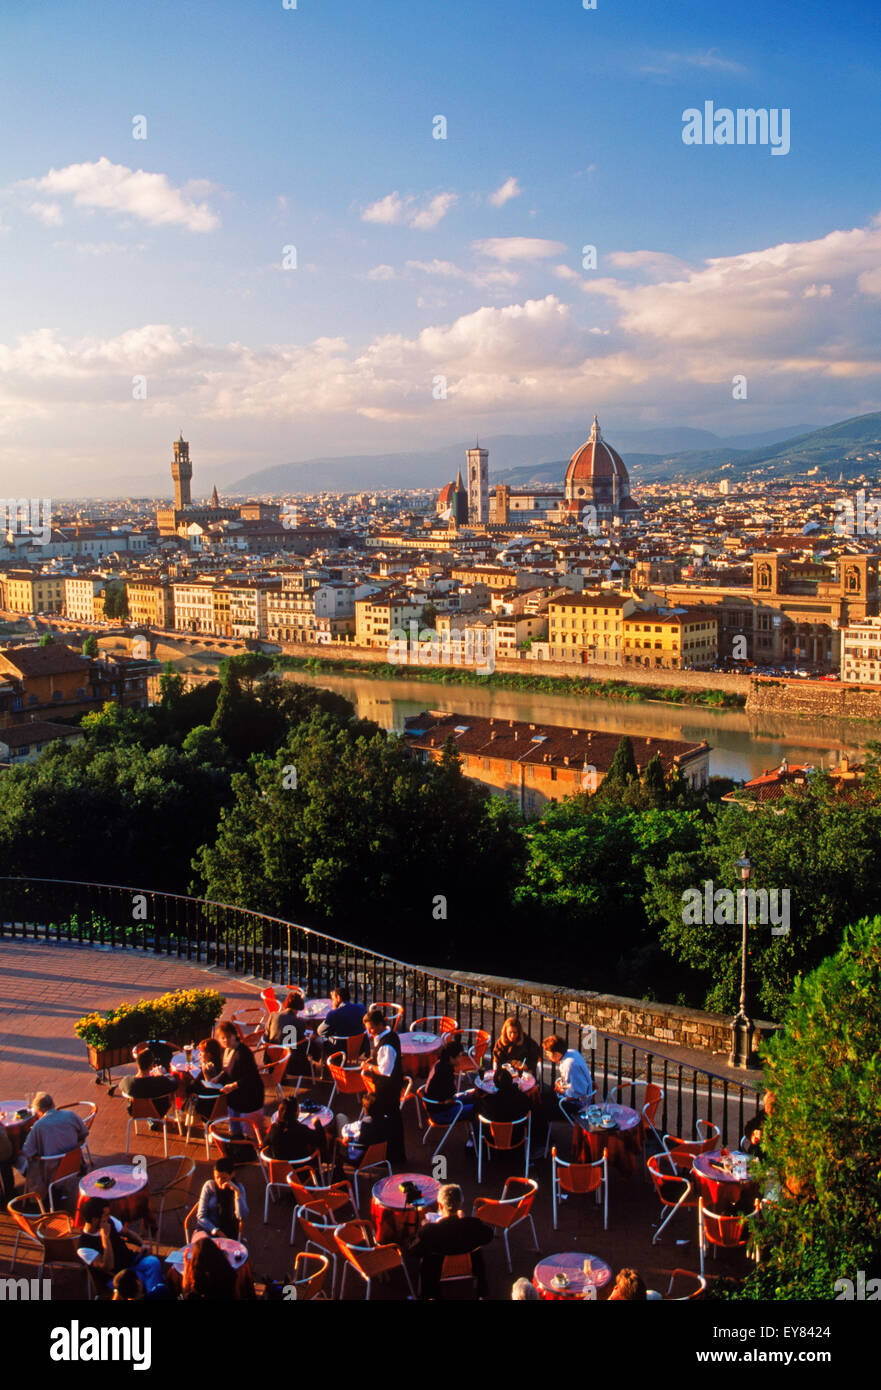 Personas y mesas de café al aire libre en el Piazzale Michelangelo (Plaza) por encima del río Arno y Florencia cerca del atardecer Foto de stock